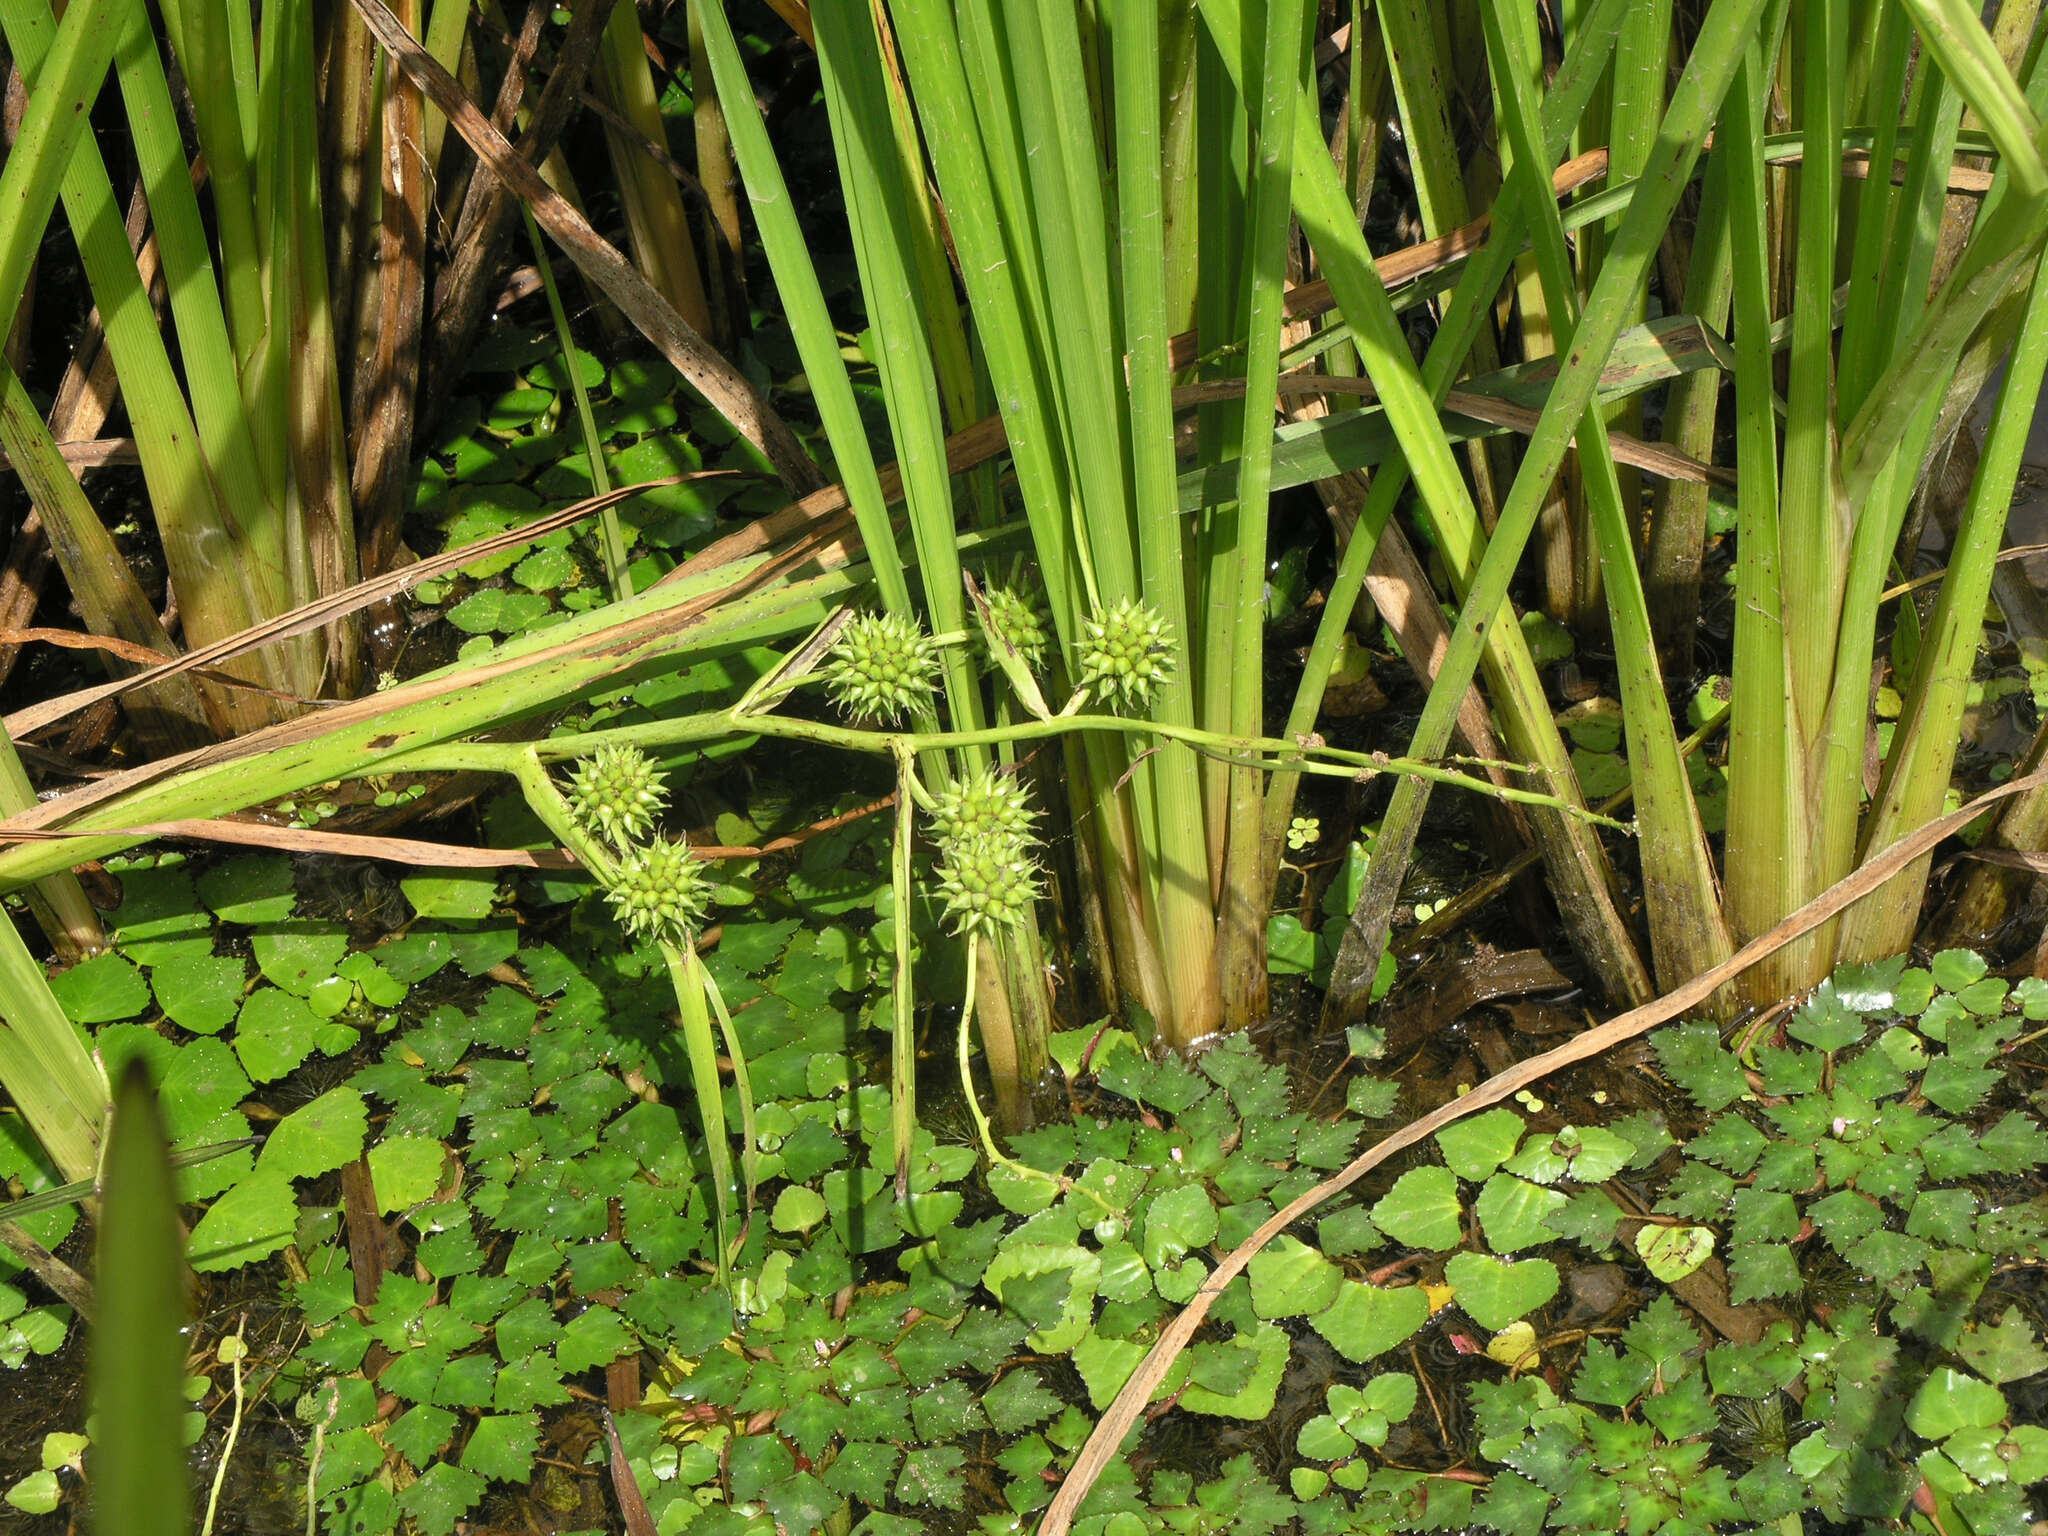 Image of Sparganium eurycarpum subsp. coreanum (H. Lév.) C. D. K. Cook & M. S. Nicholls